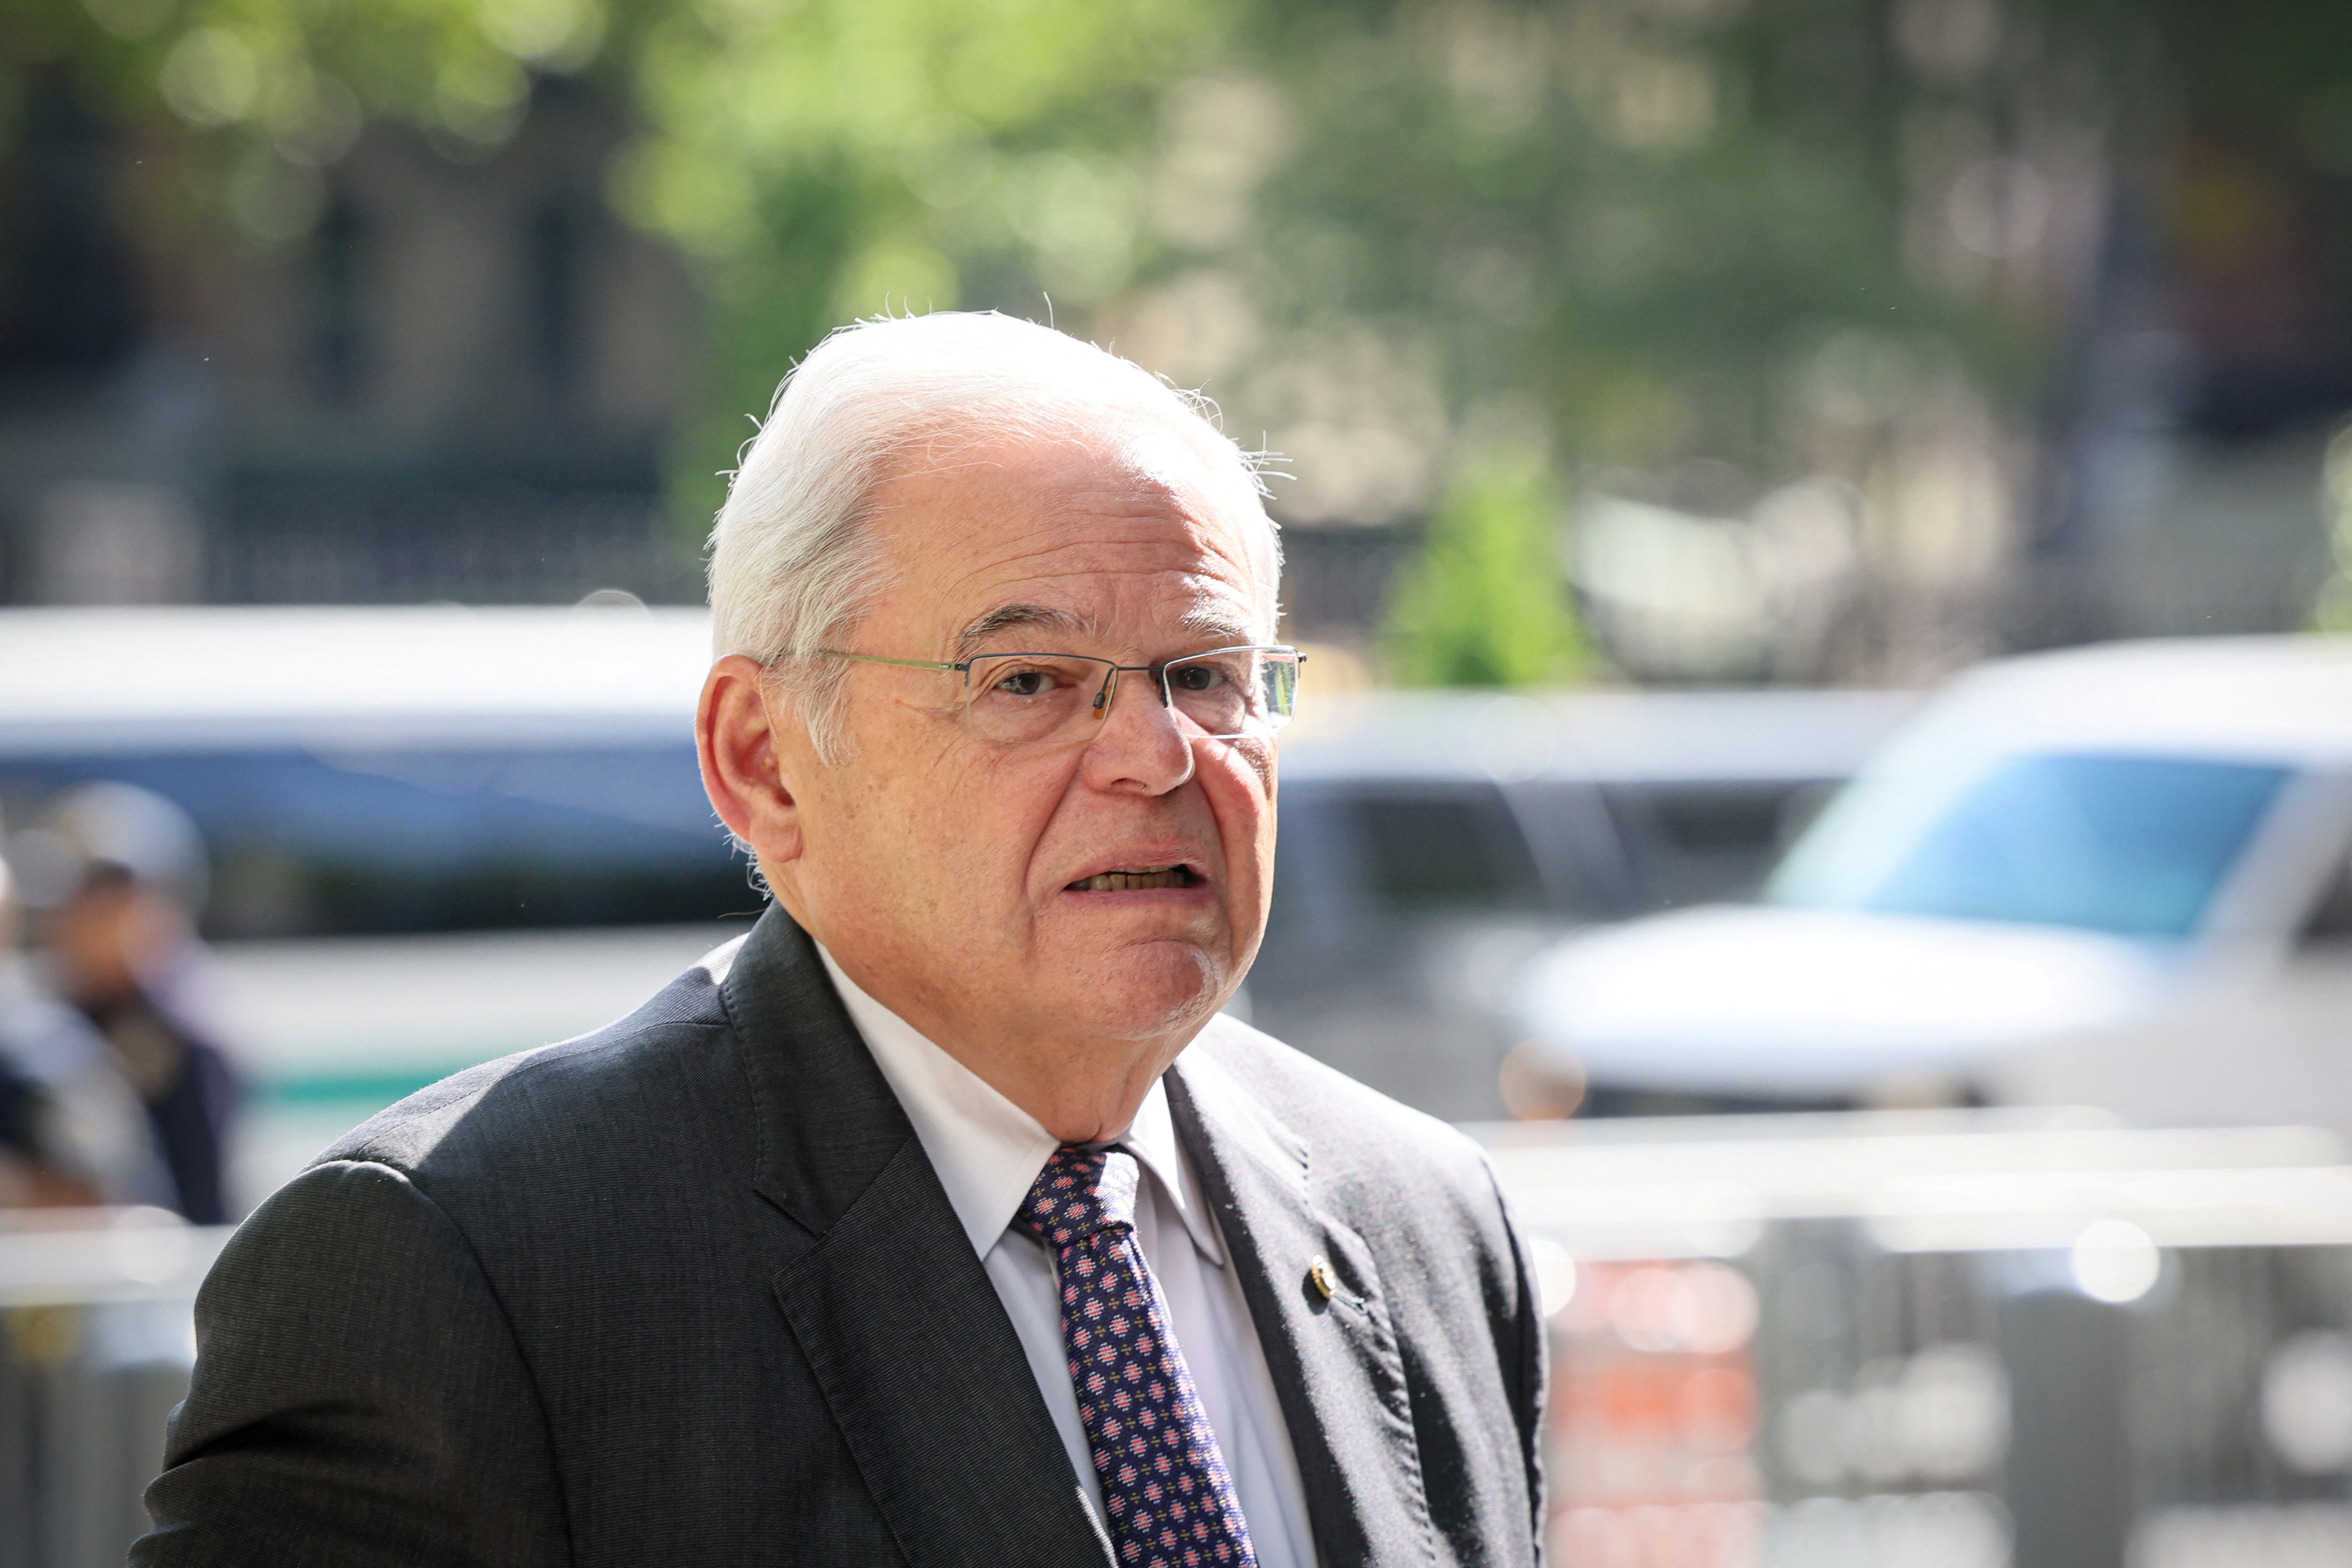 U.S. Senator Robert Menendez (D-NJ), arrives at Federal Court, for his bribery trial in New York